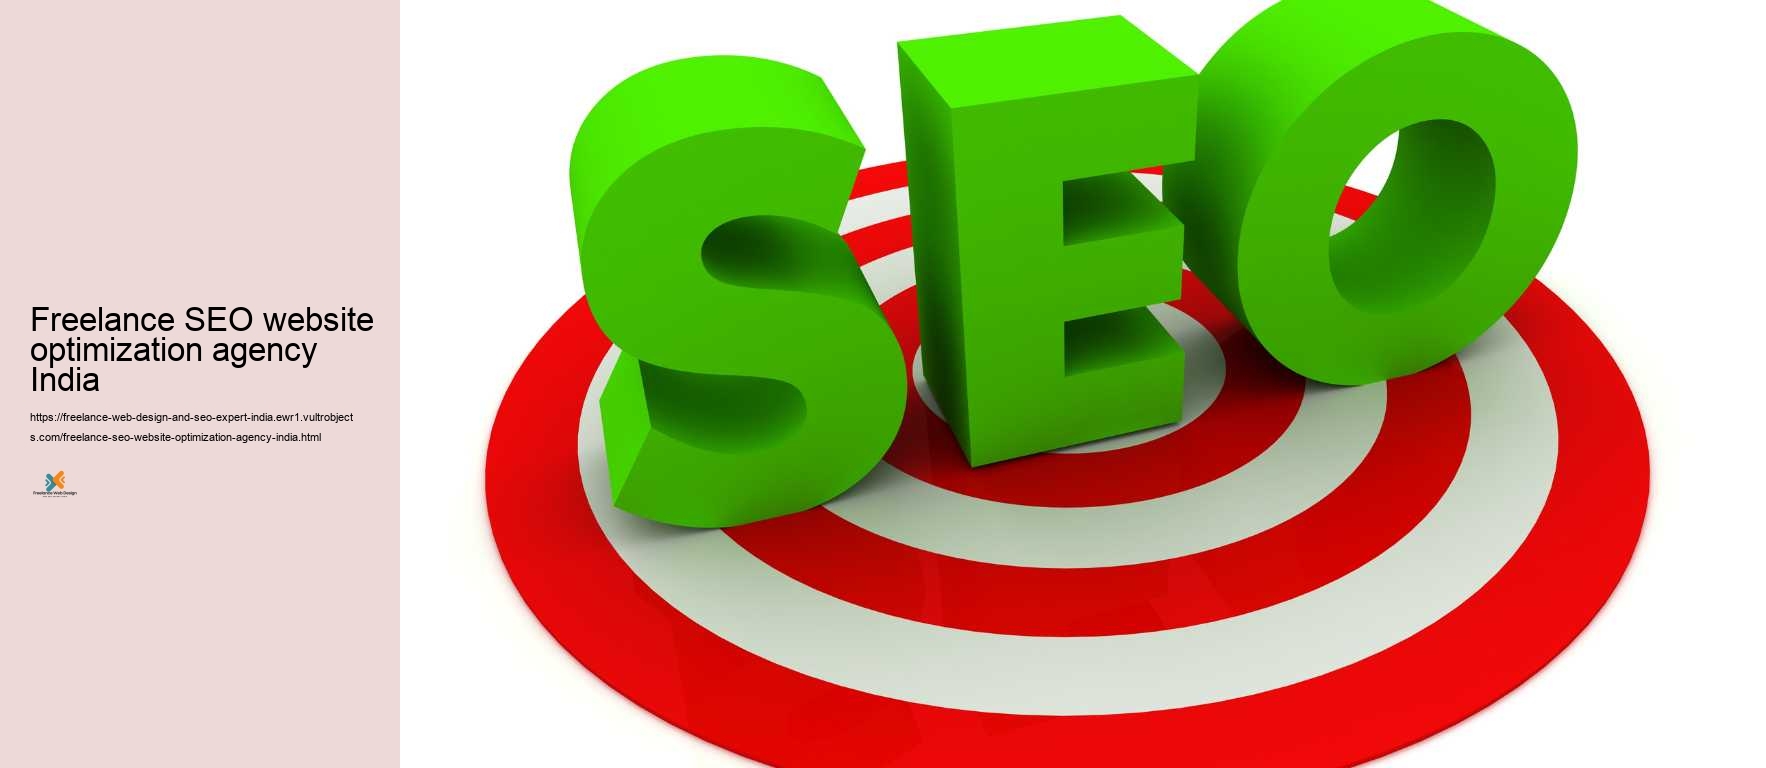 Freelance SEO website optimization agency India